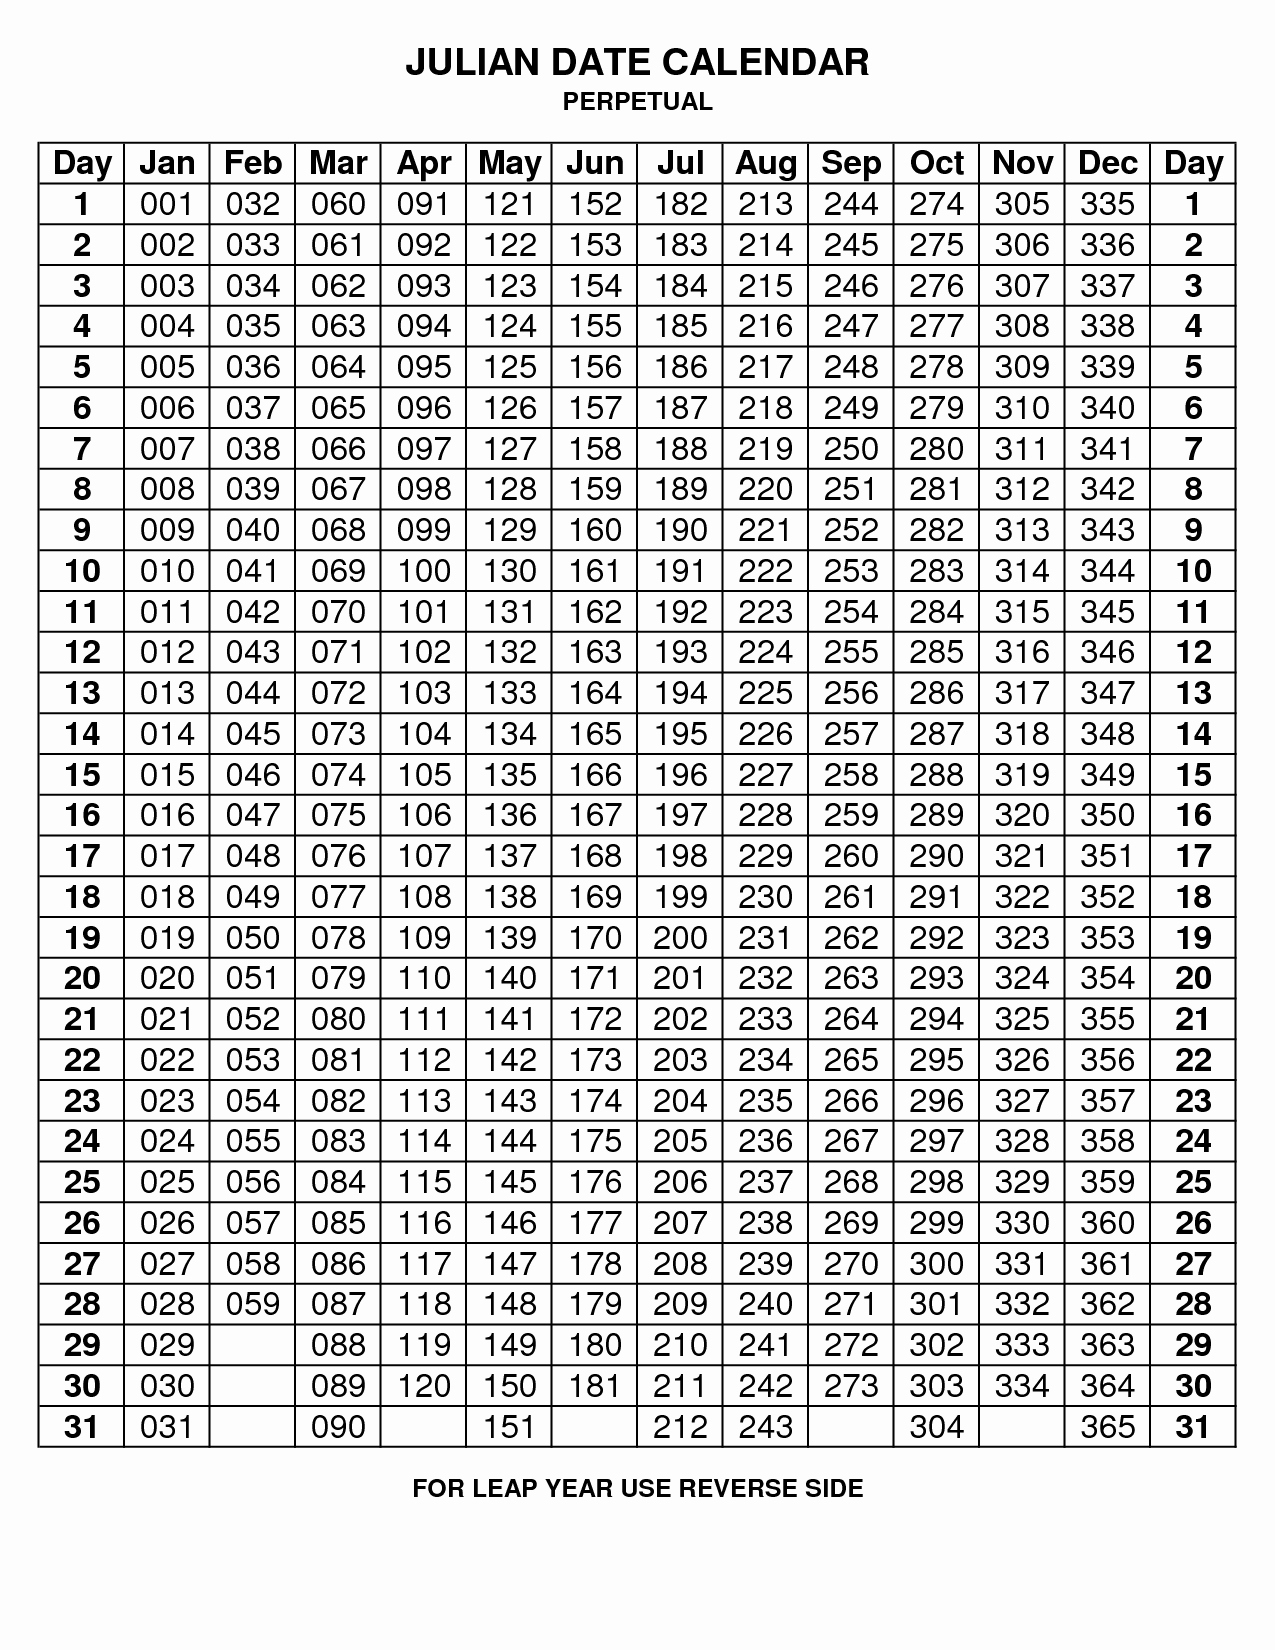 Depo Provera Perpetual Calendar To Print - Calendar  Depo Injection Calendar 2021